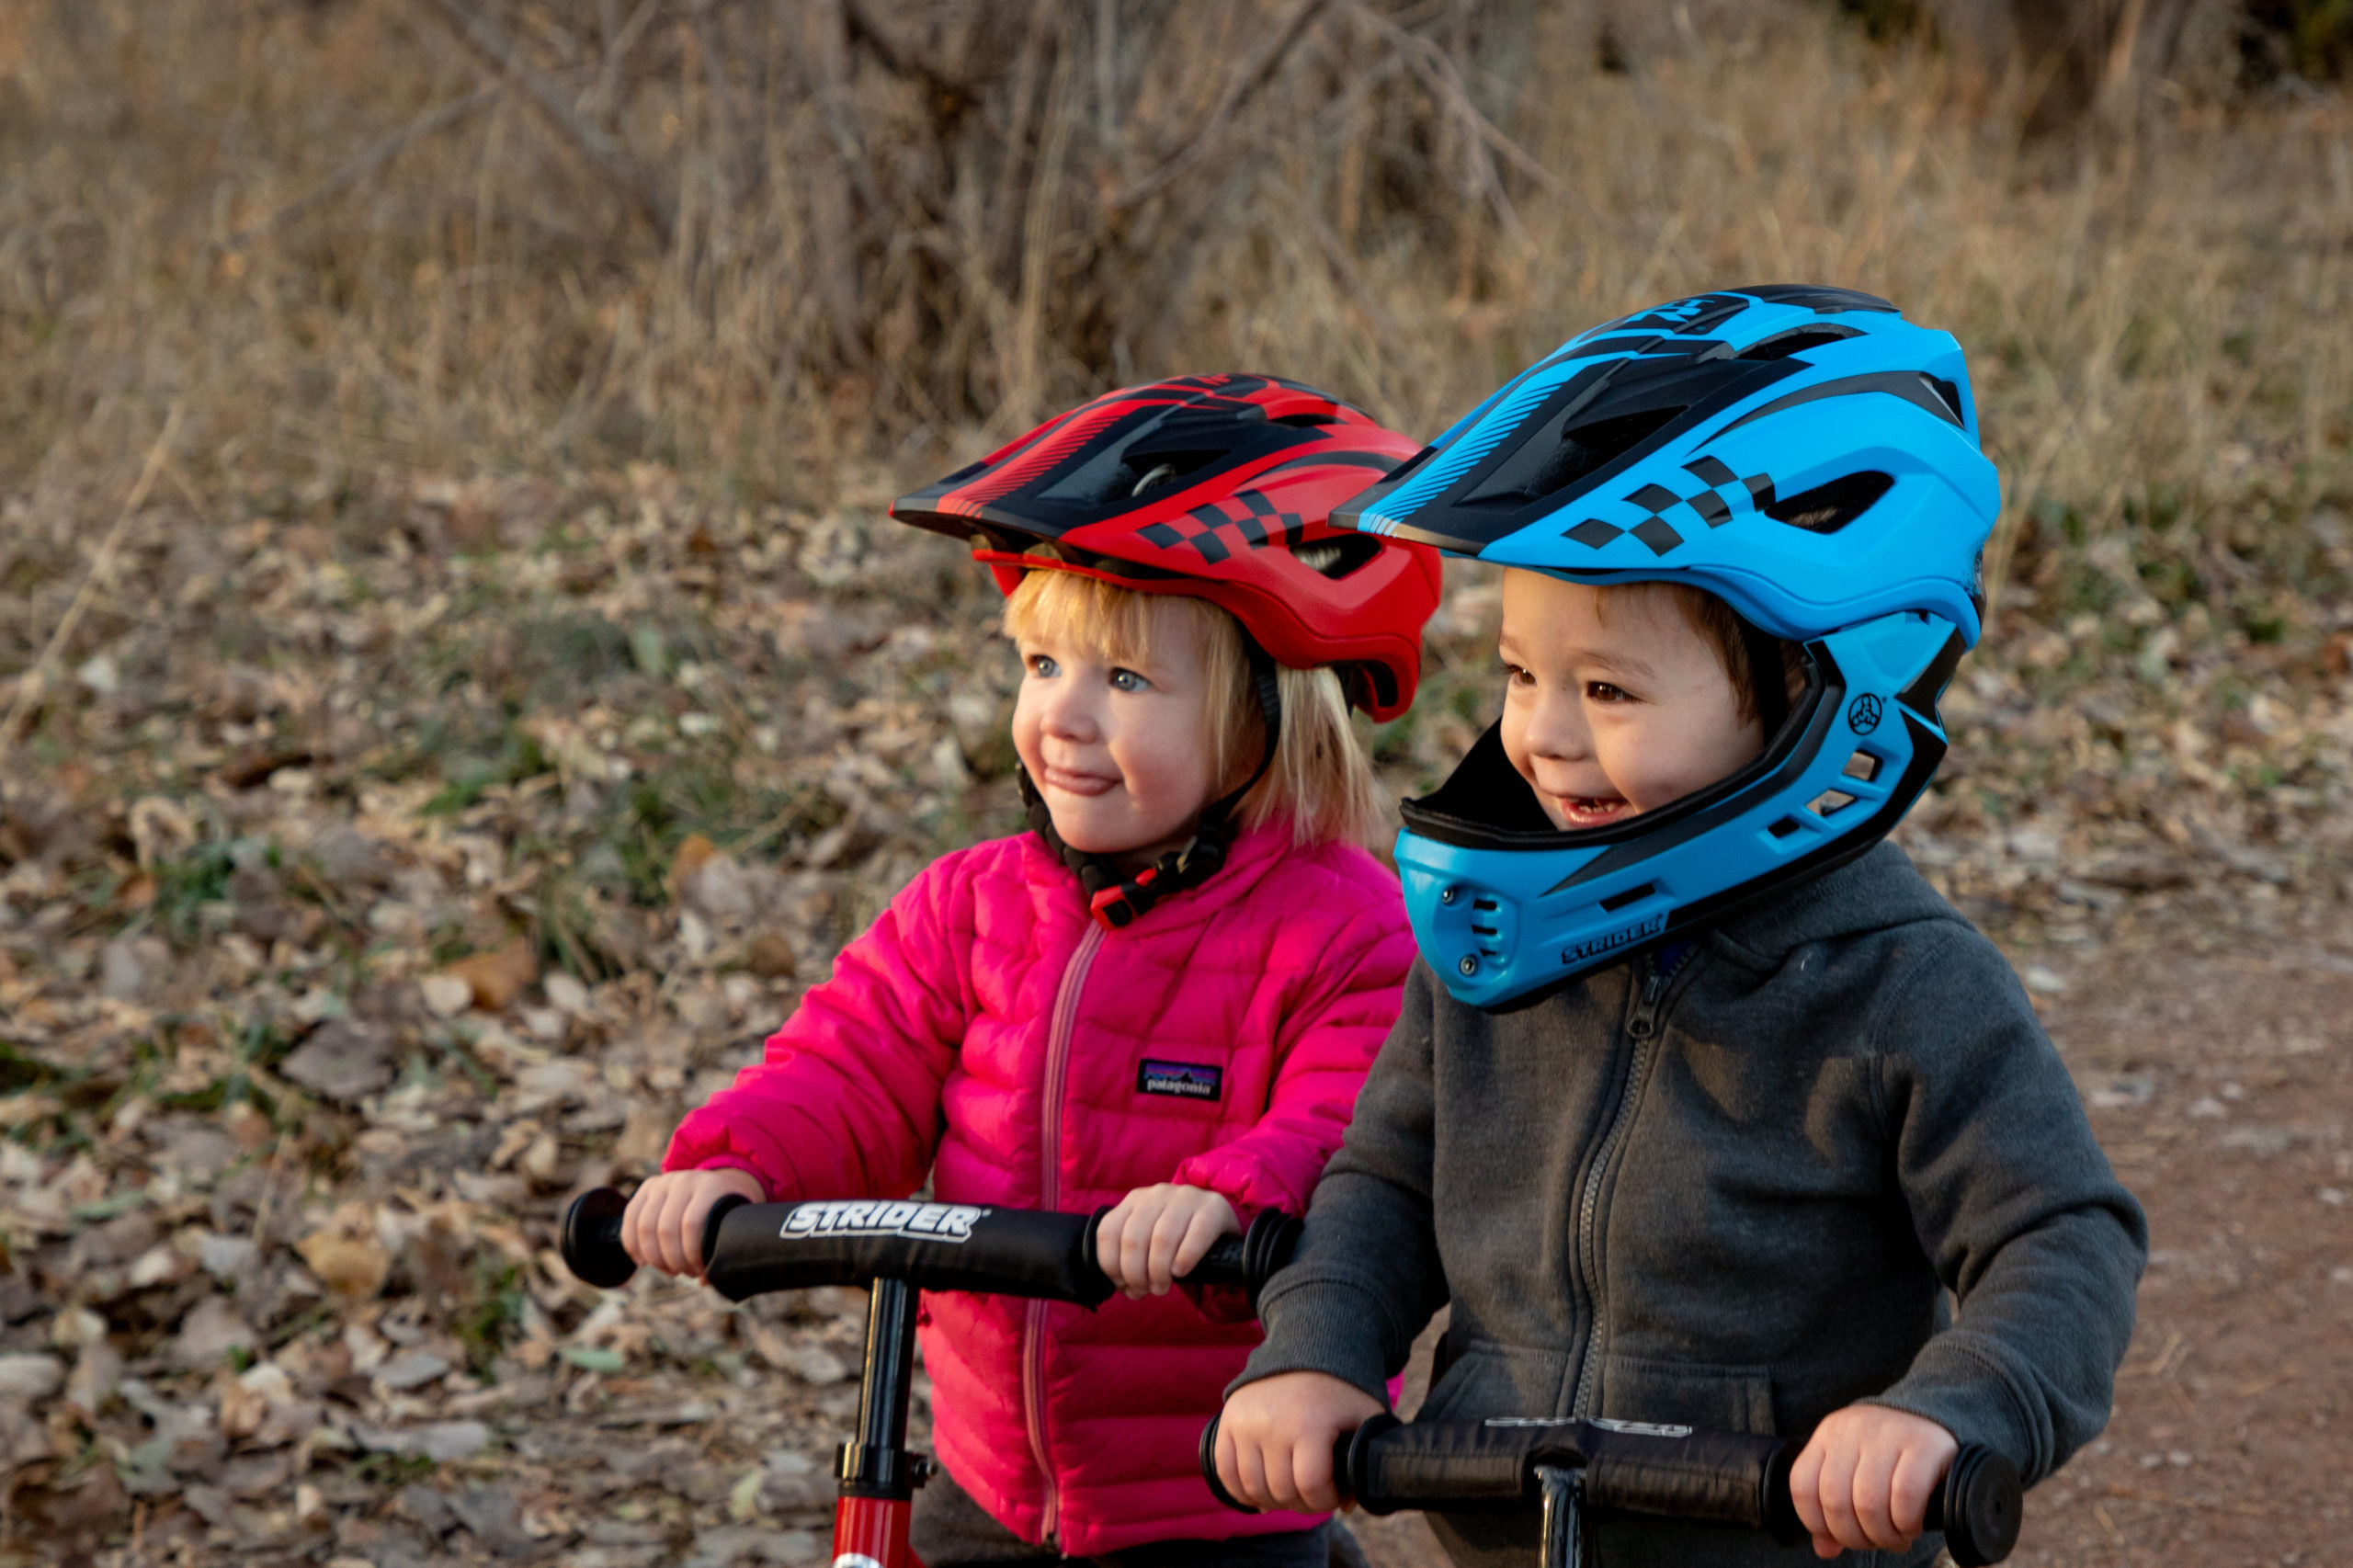 TOMSHOOH Kid Bike Full Face Helmet Children Safety Riding Skateboard B1Y0 